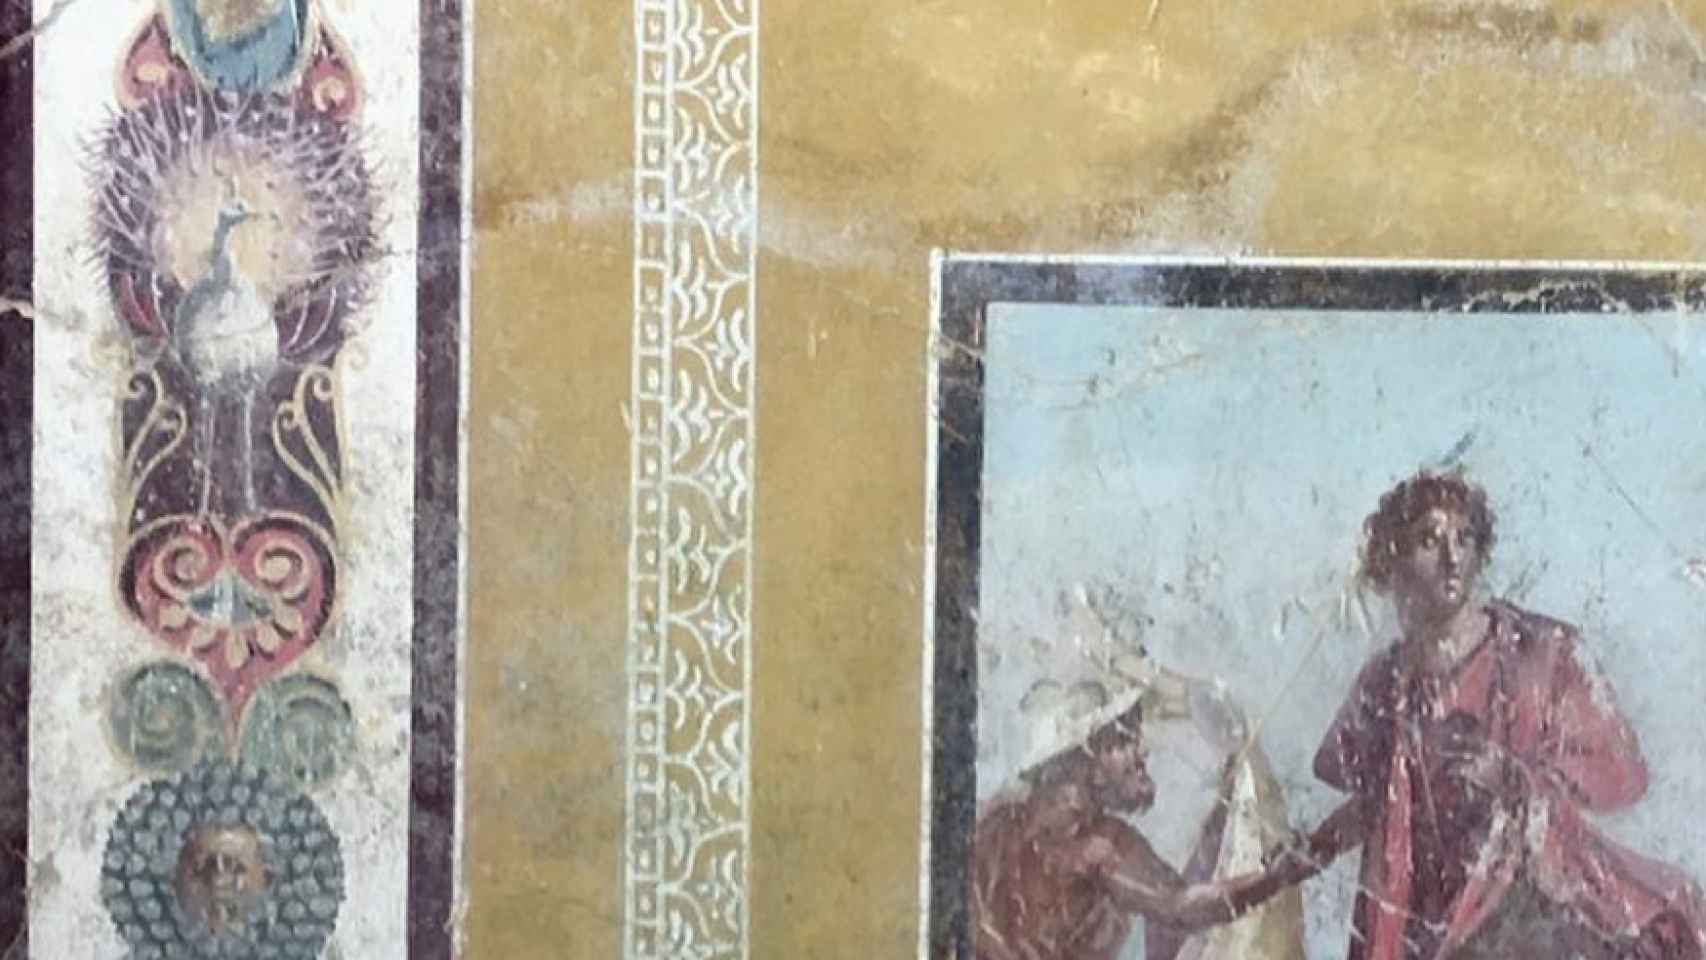 Los pavos reales decoran el fresco hallado en Pompeya.